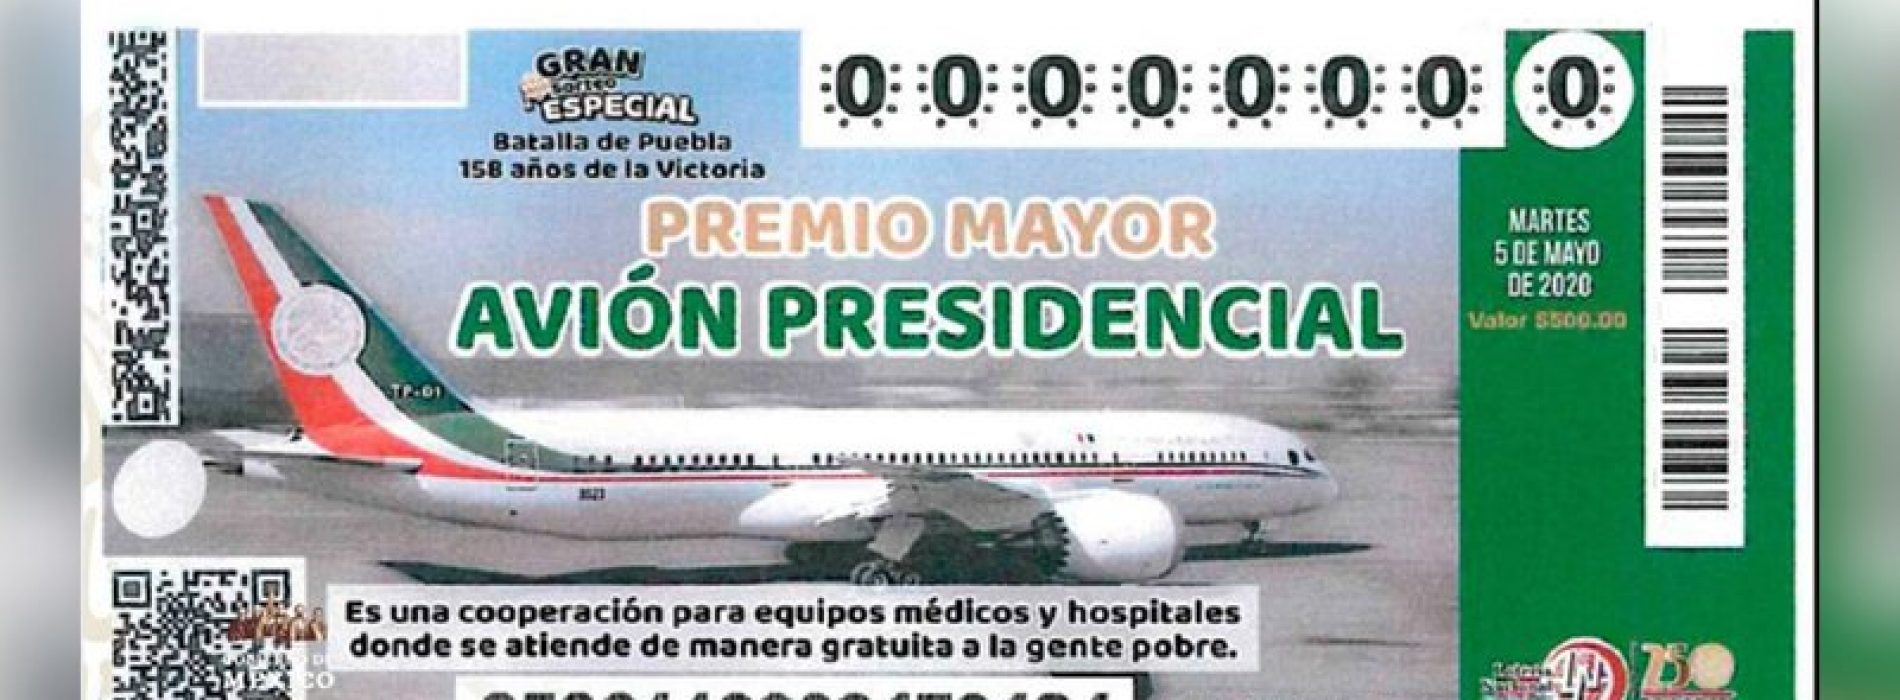 AMLO revela el cachito de Lotería para rifa del avión presidencial